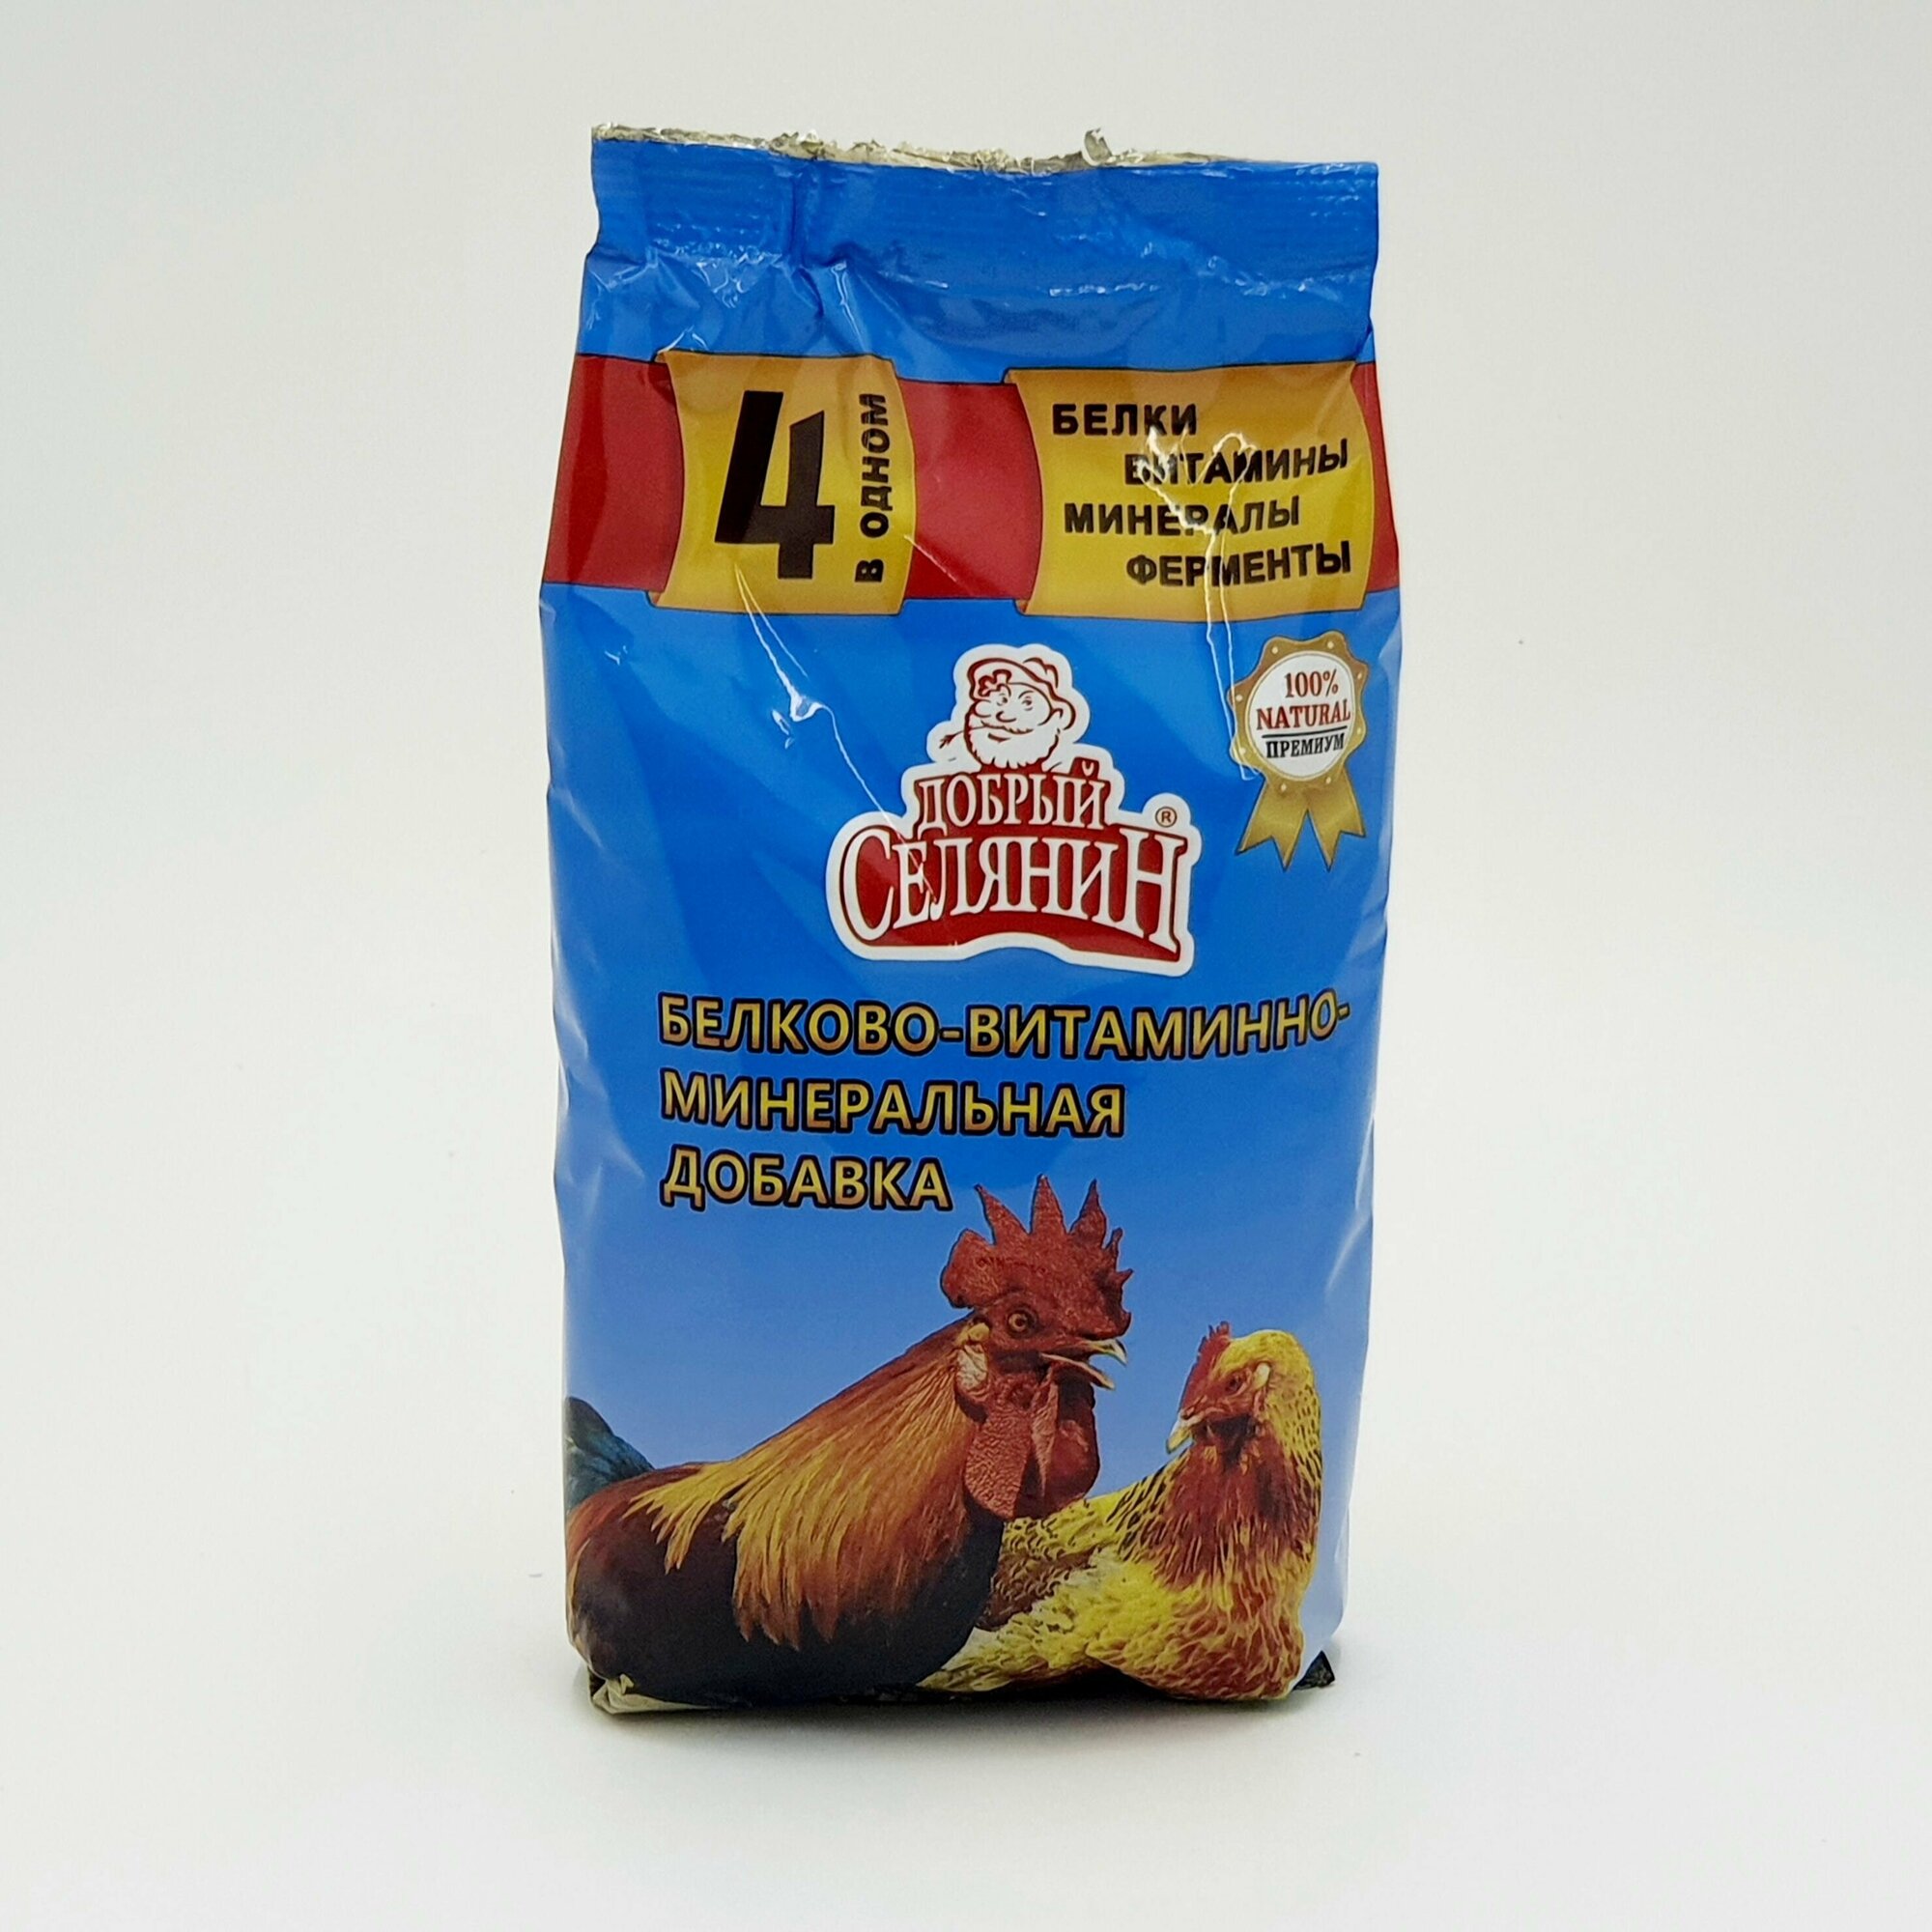 Премикс для кур, уток, индюков, и т.д. Белково-витаминно-минеральная добавка 4 в 1 с ферментами для сельскохозяйственной птицы премиум 500 гр - фотография № 3